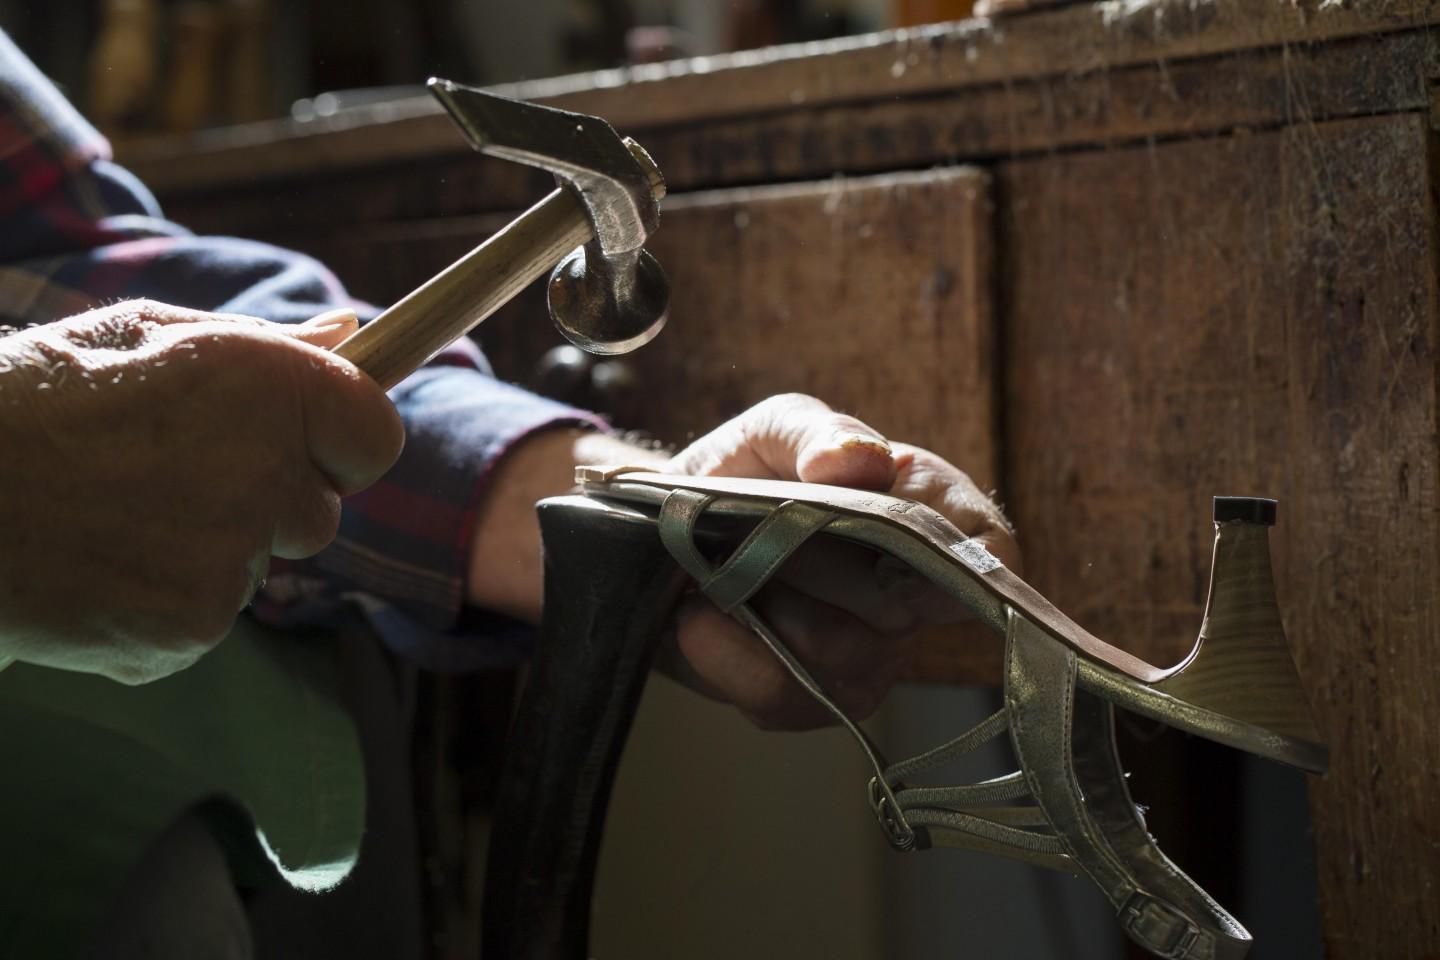 Réparation de chaussures - Cordonnerie de Massy dans l'Essonne